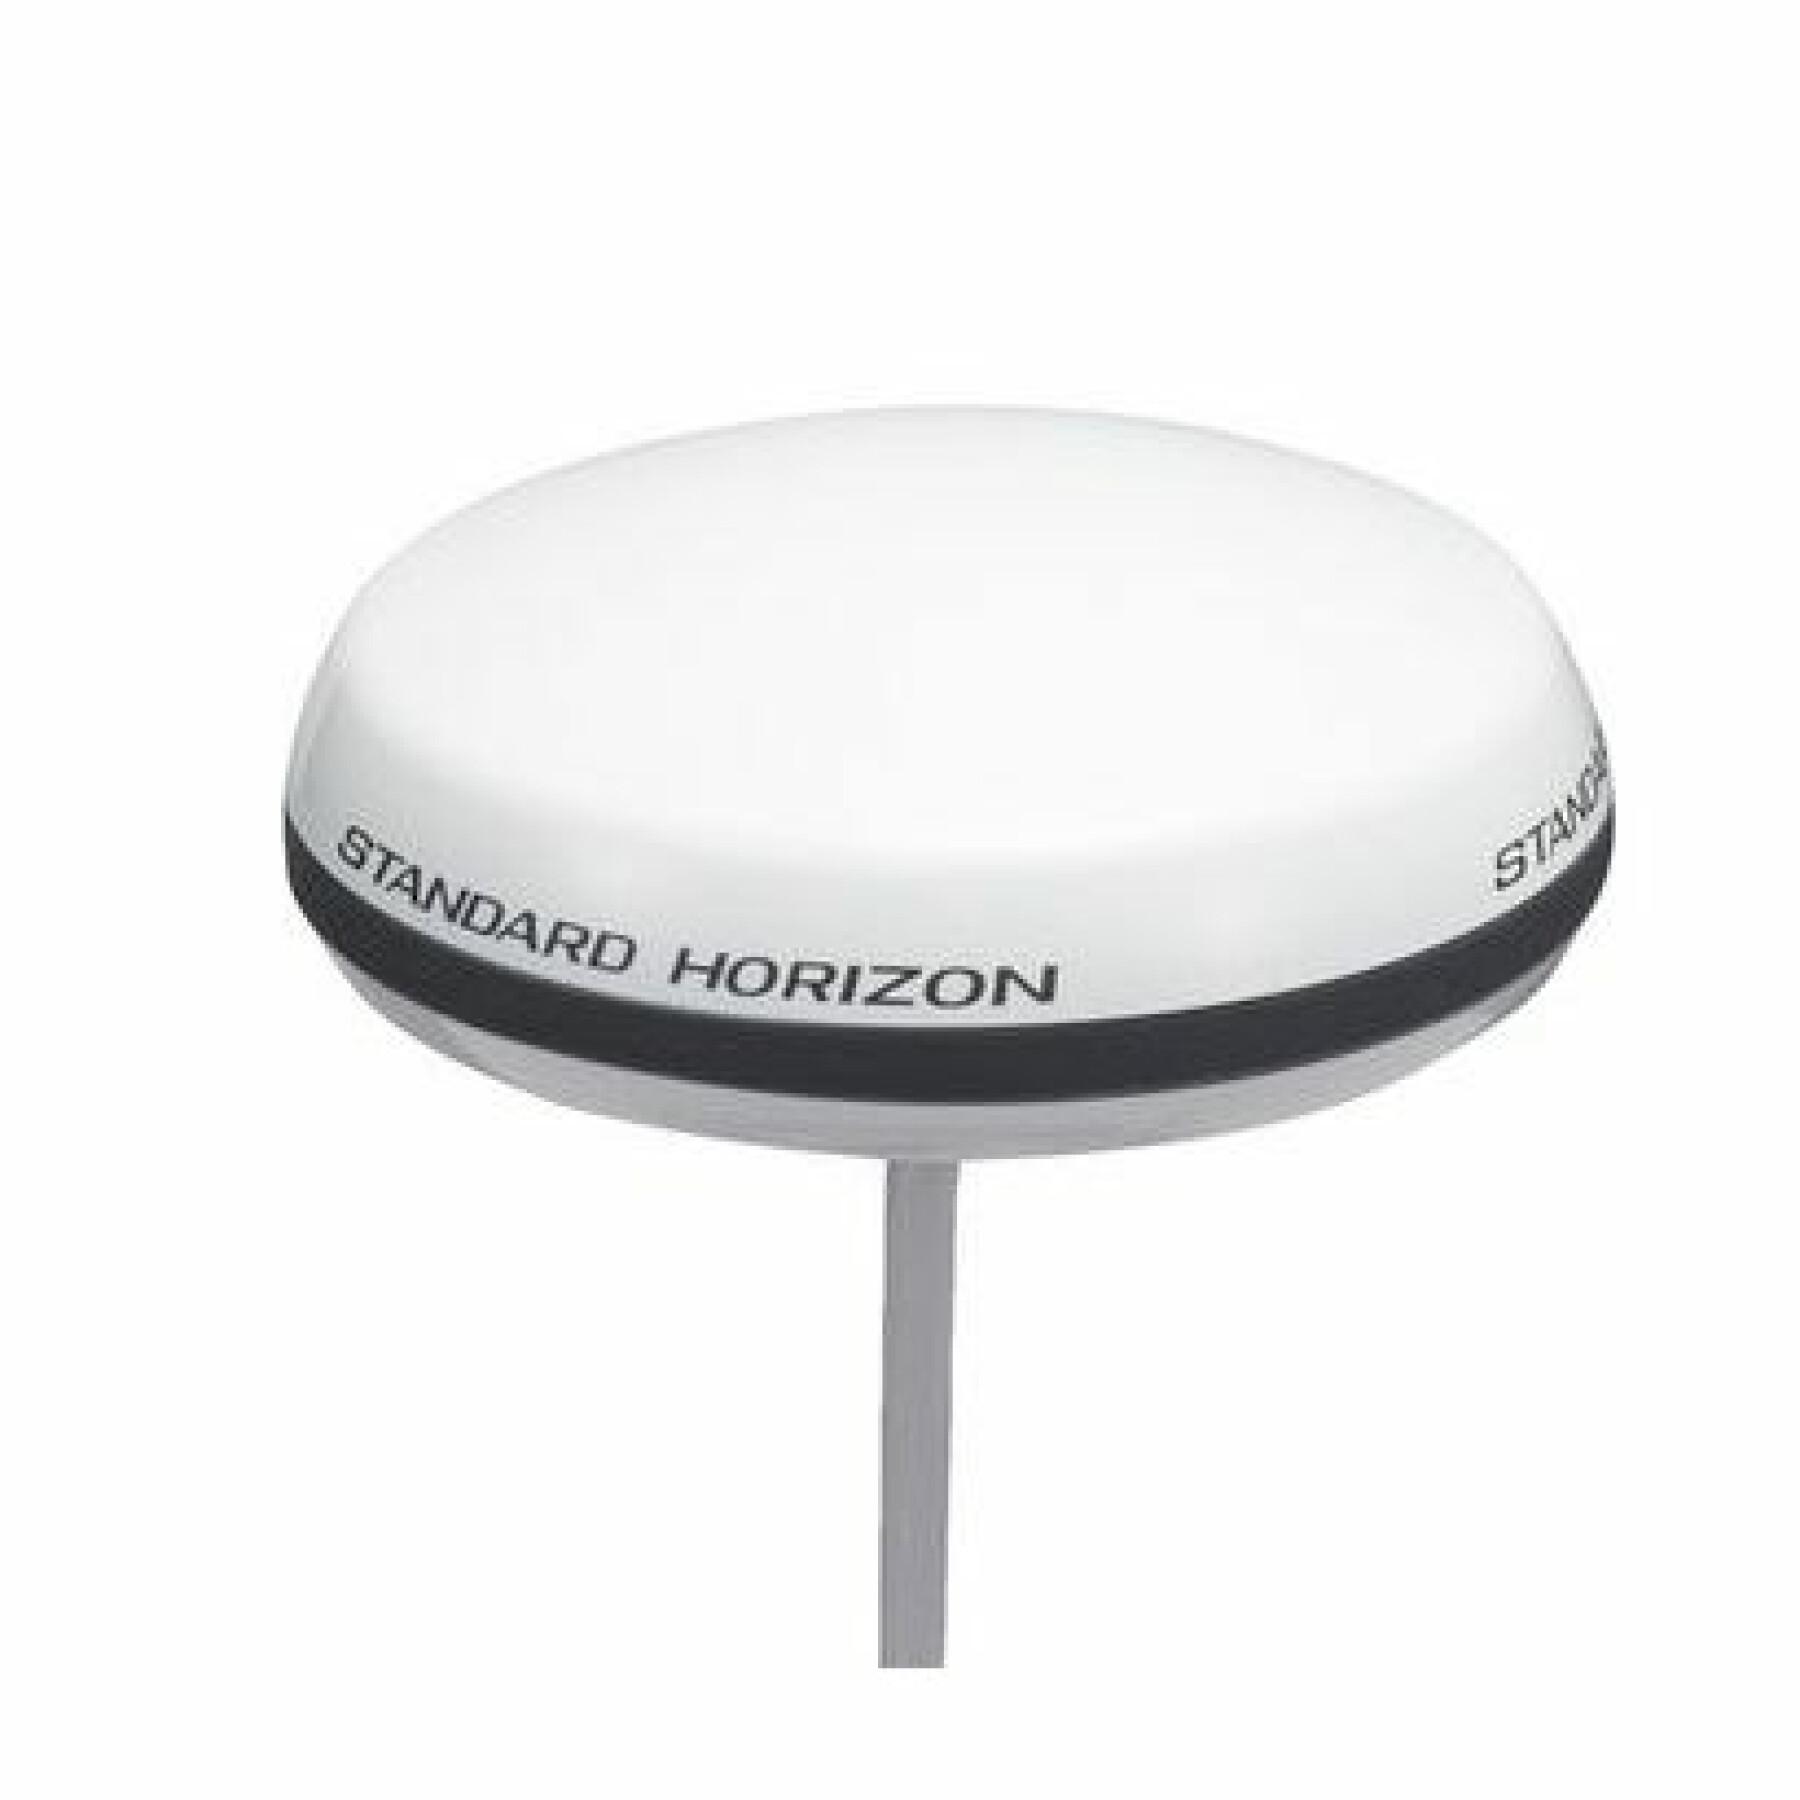 Antena gps externa de 15 m de cabo para todos os modelos fixos Standard Horizon